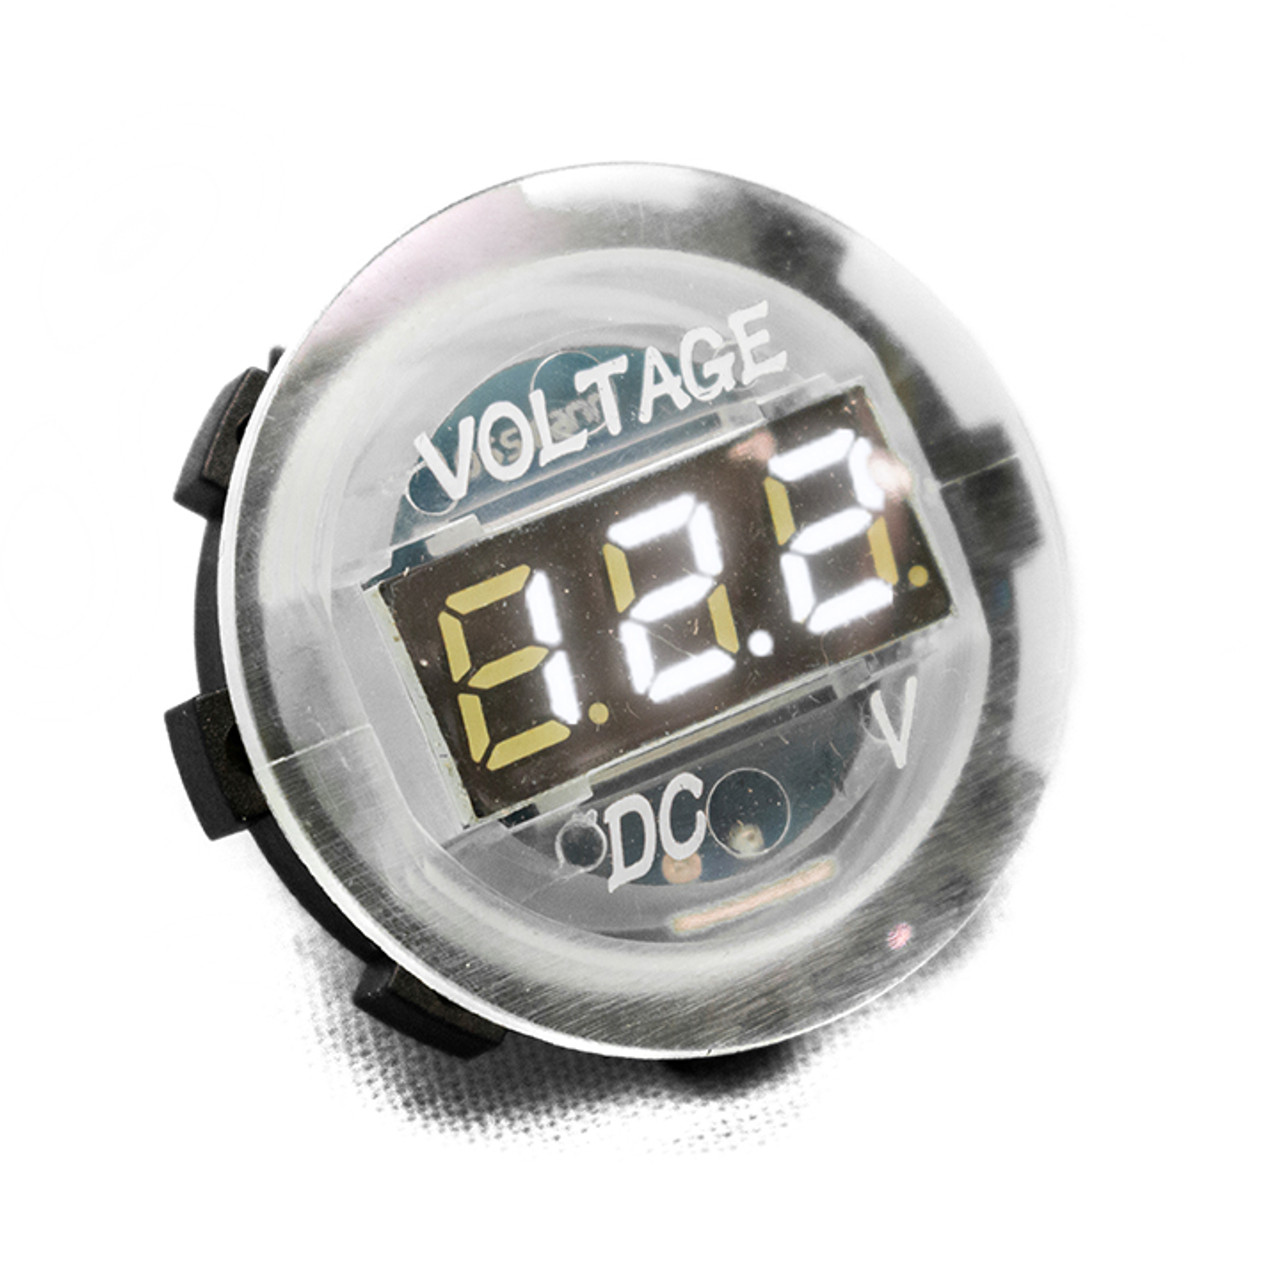 Clear Digital Volt Meter Round Gauge With LED Digital Lighting 12 volt Operation Range Race Sport Lighting